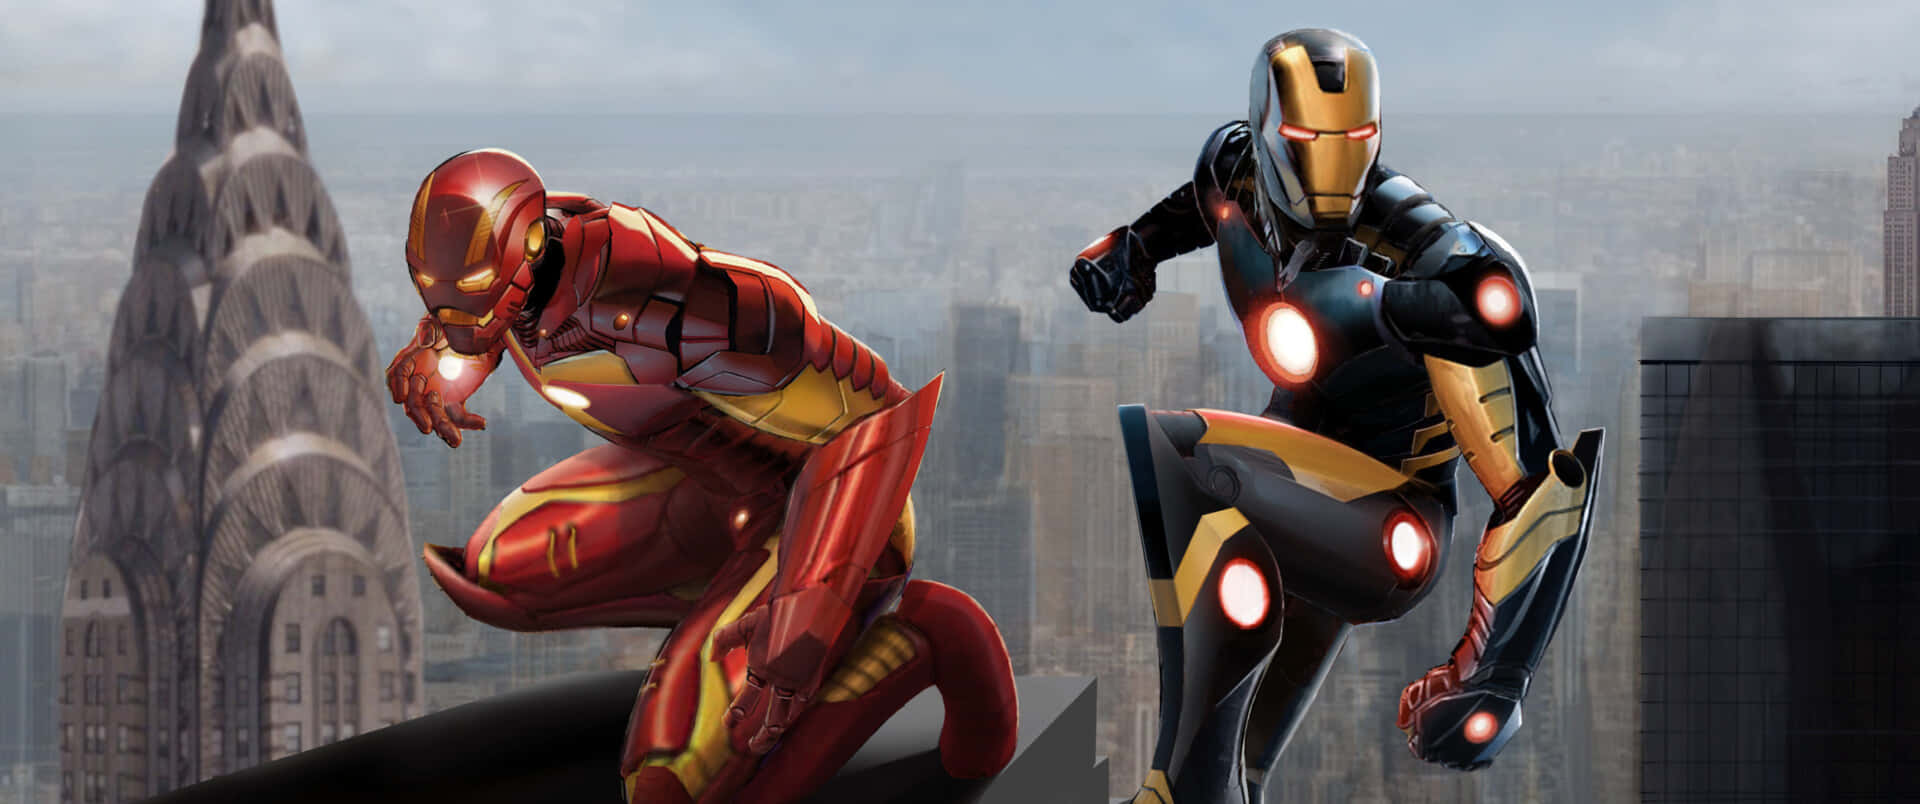 Duepersonaggi Di Iron Man Stanno Volando Sopra Una Città.